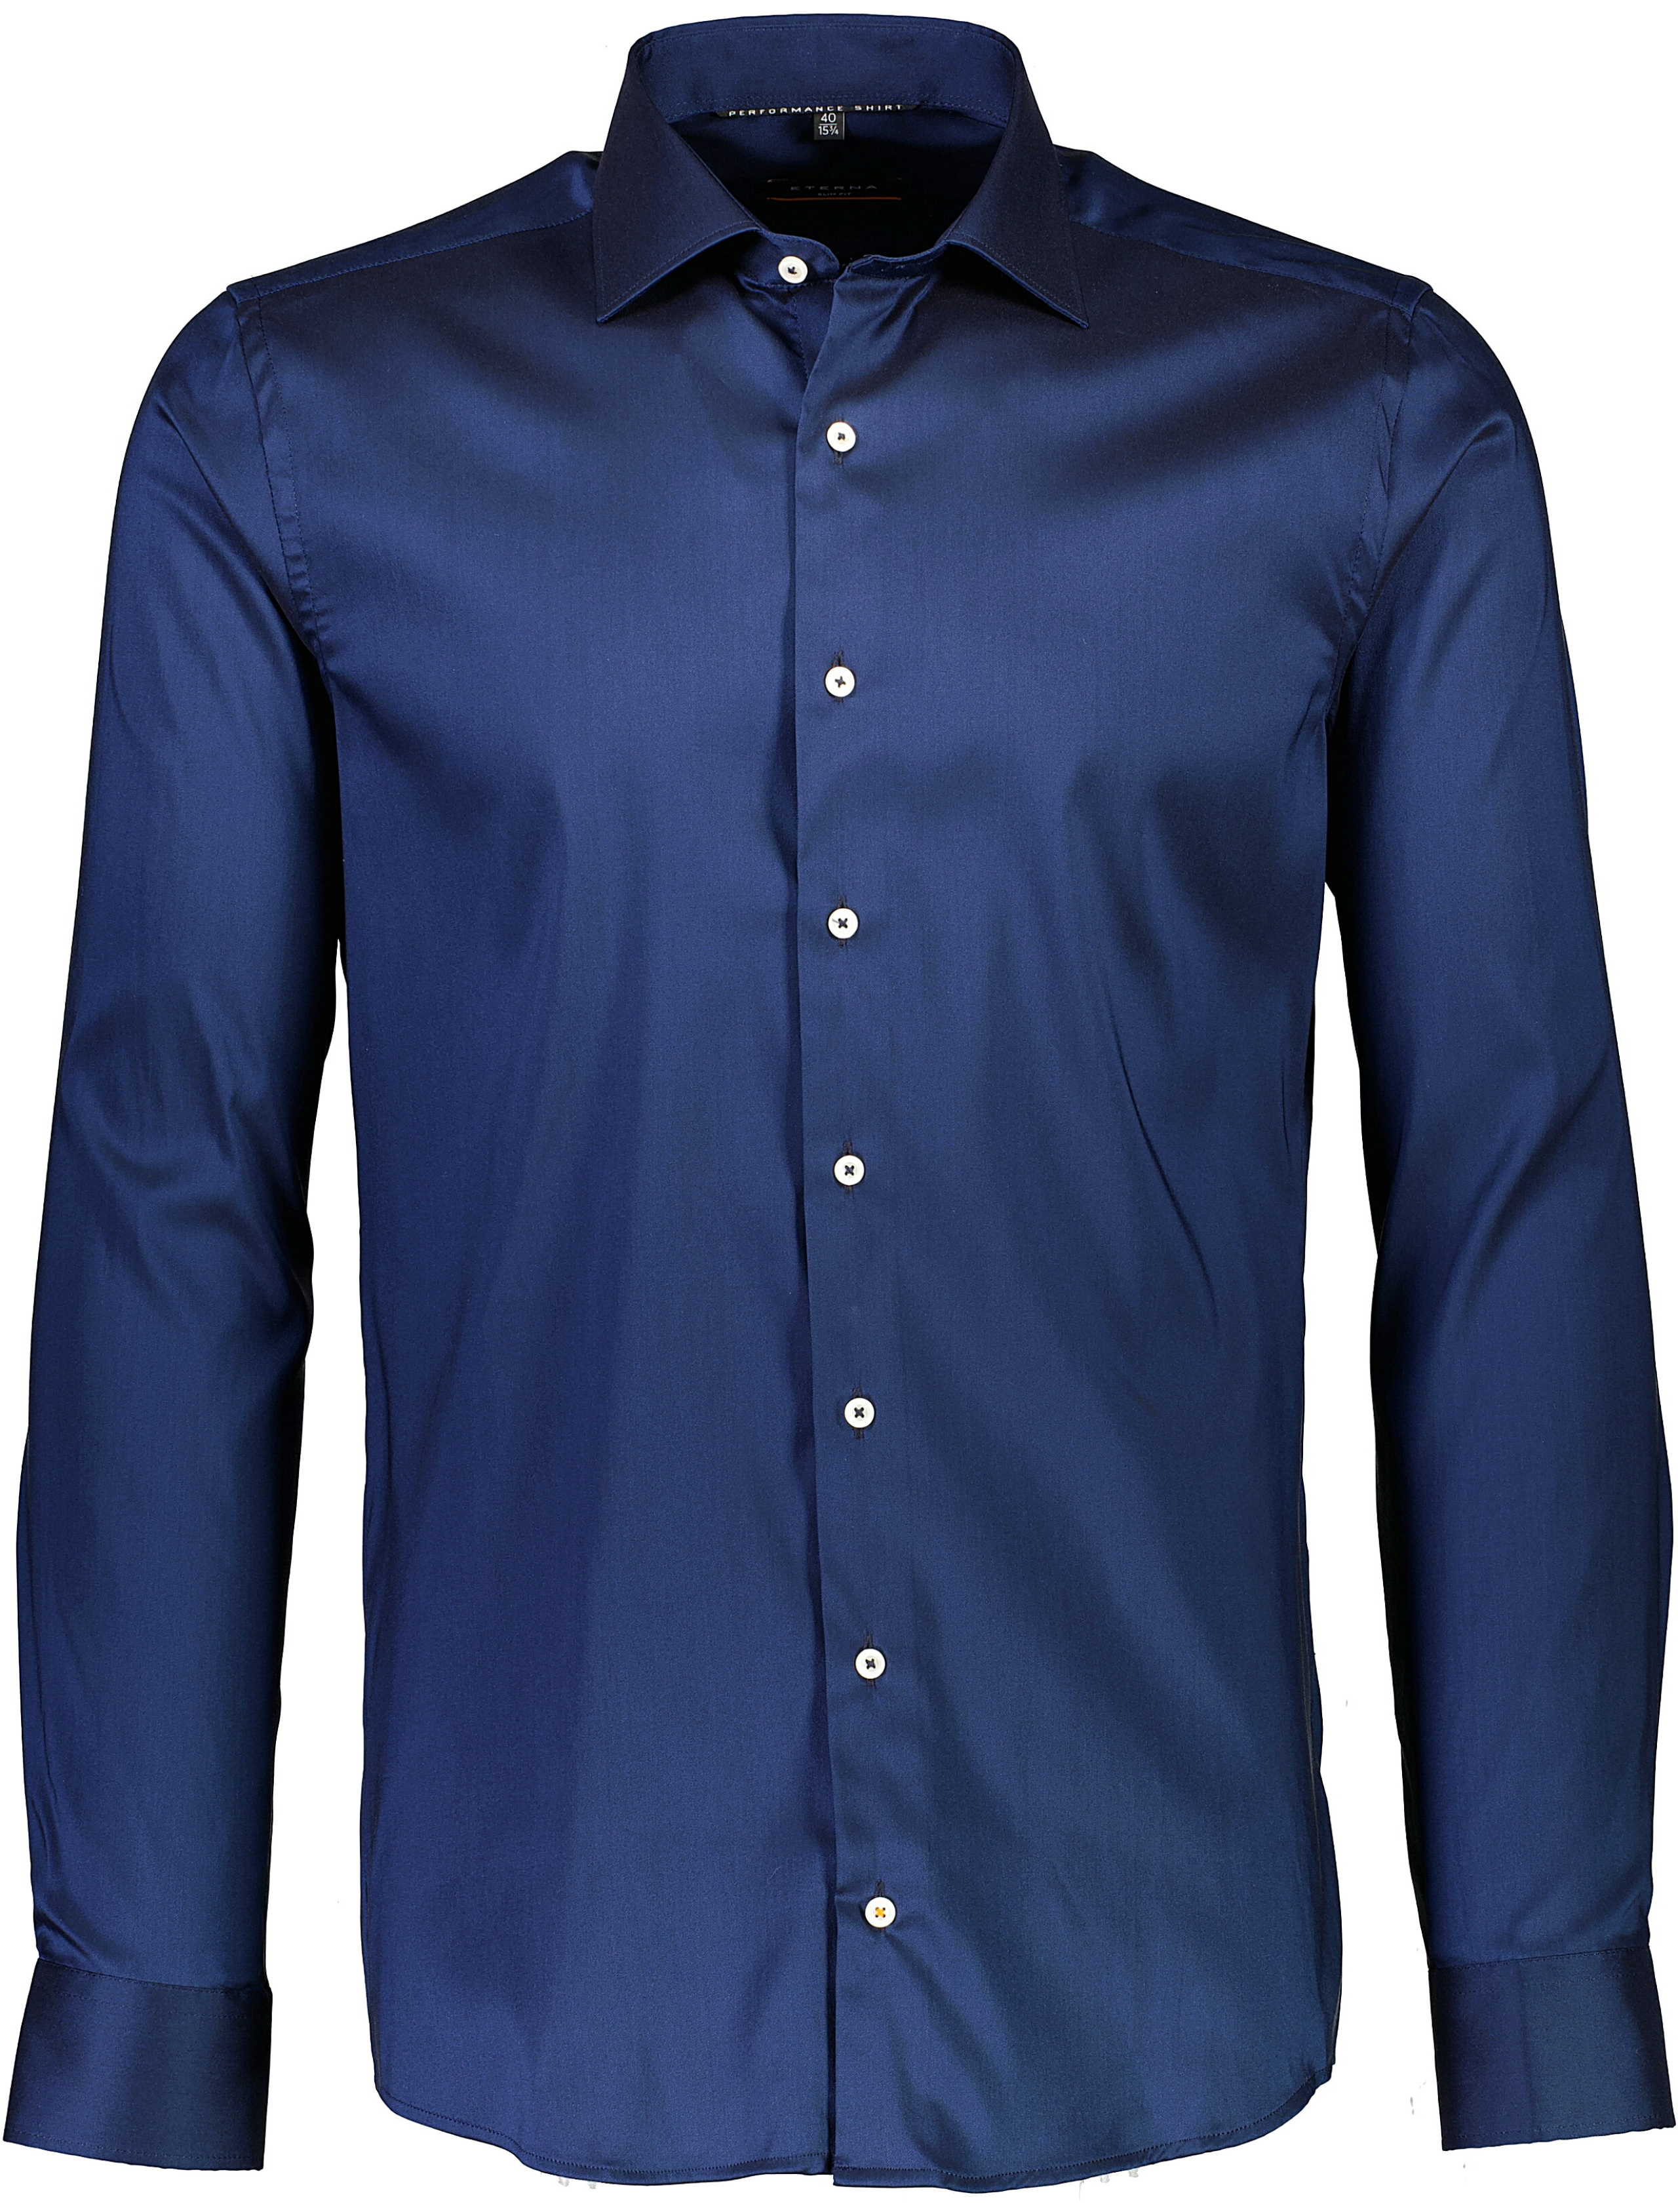 Eterna Business casual skjorte blå / 19 navy